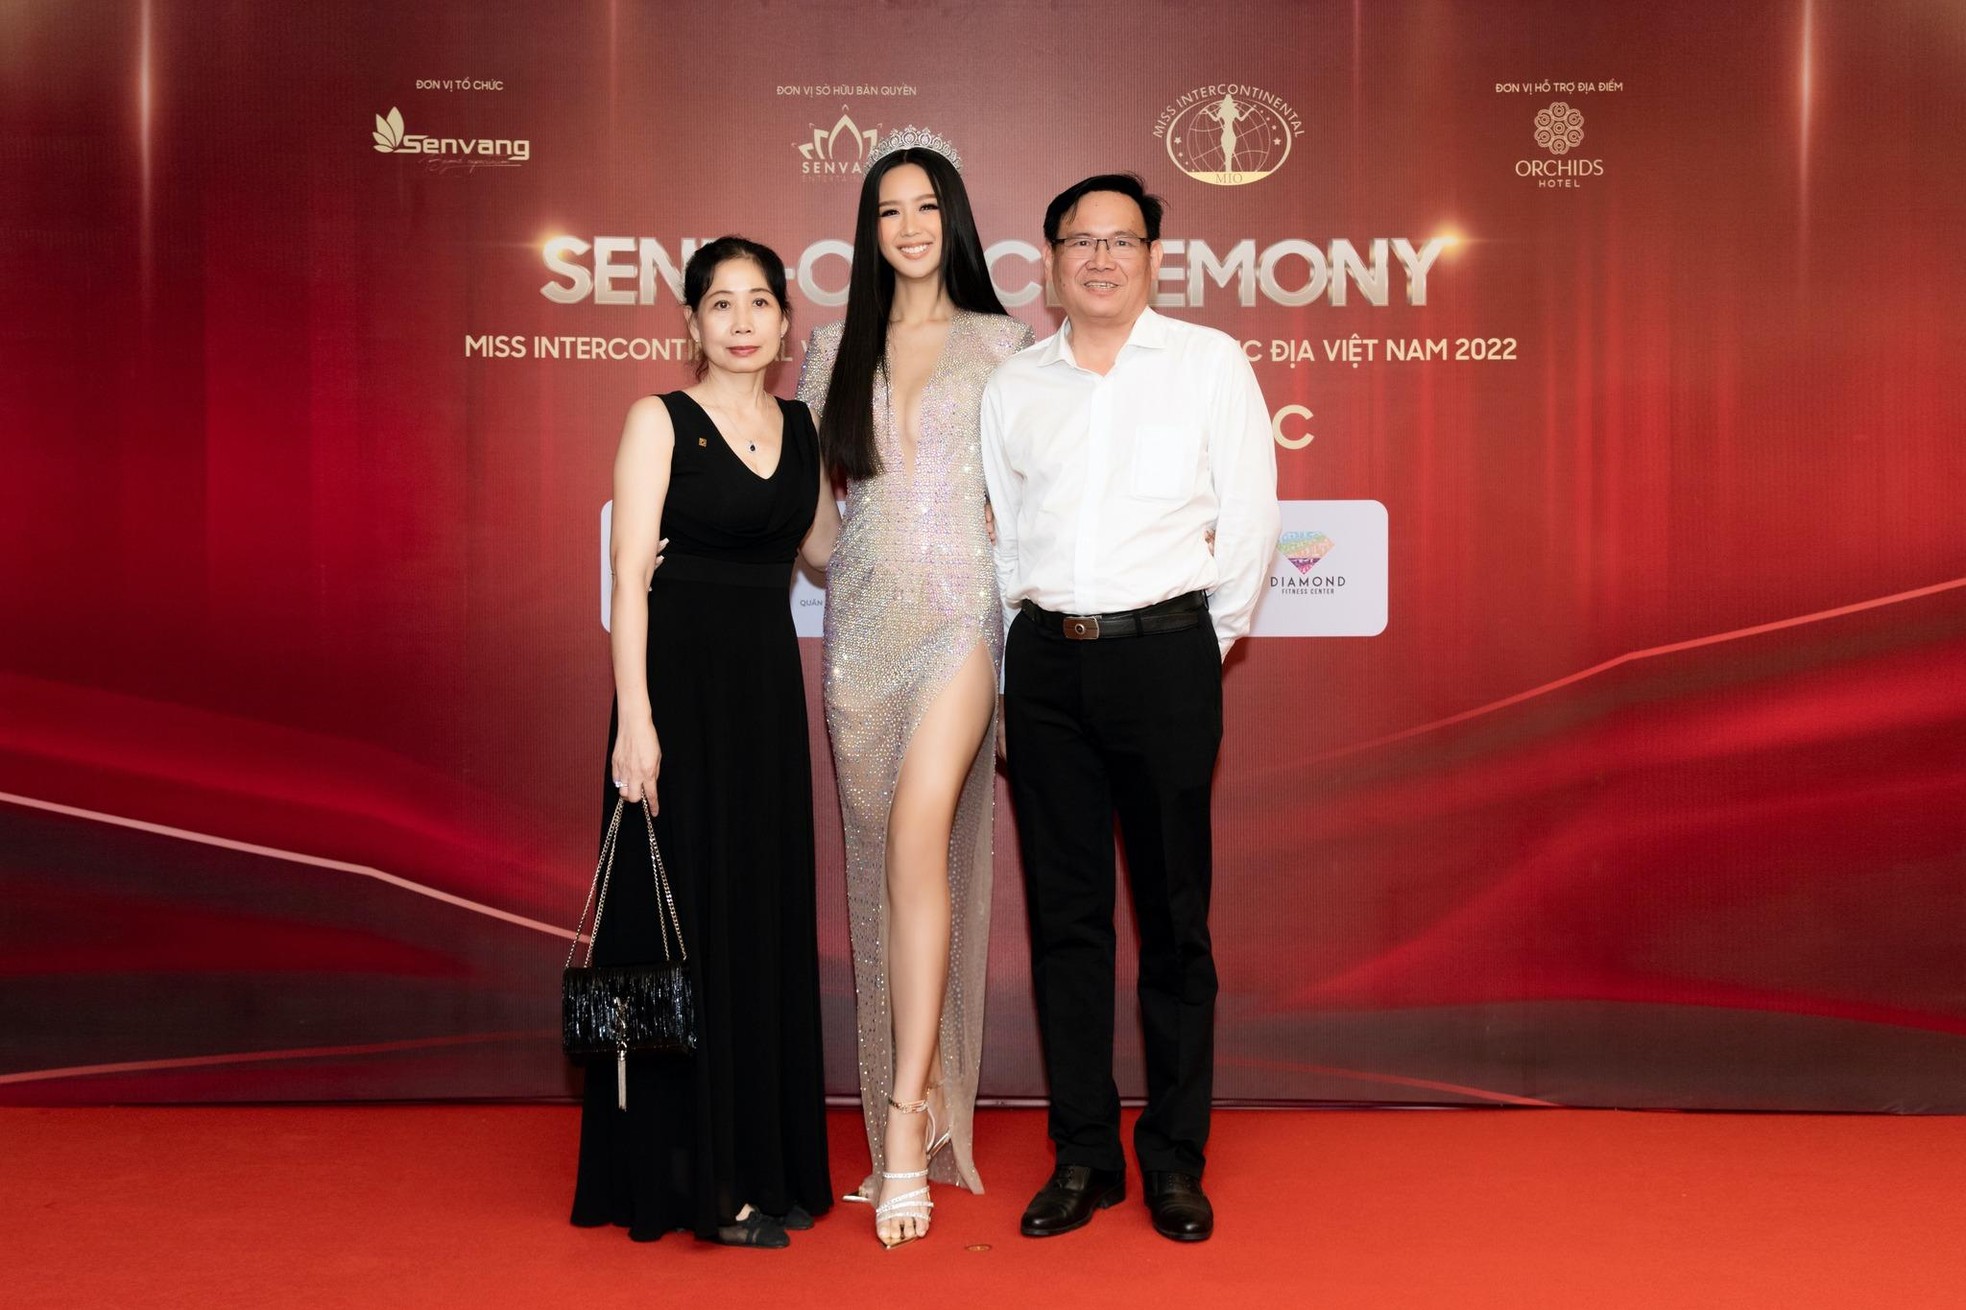 Á hậu Bảo Ngọc nổi bật với chiều cao "khủng" khi nhận sash từ đương kim Hoa hậu Liên lục địa 2021-2